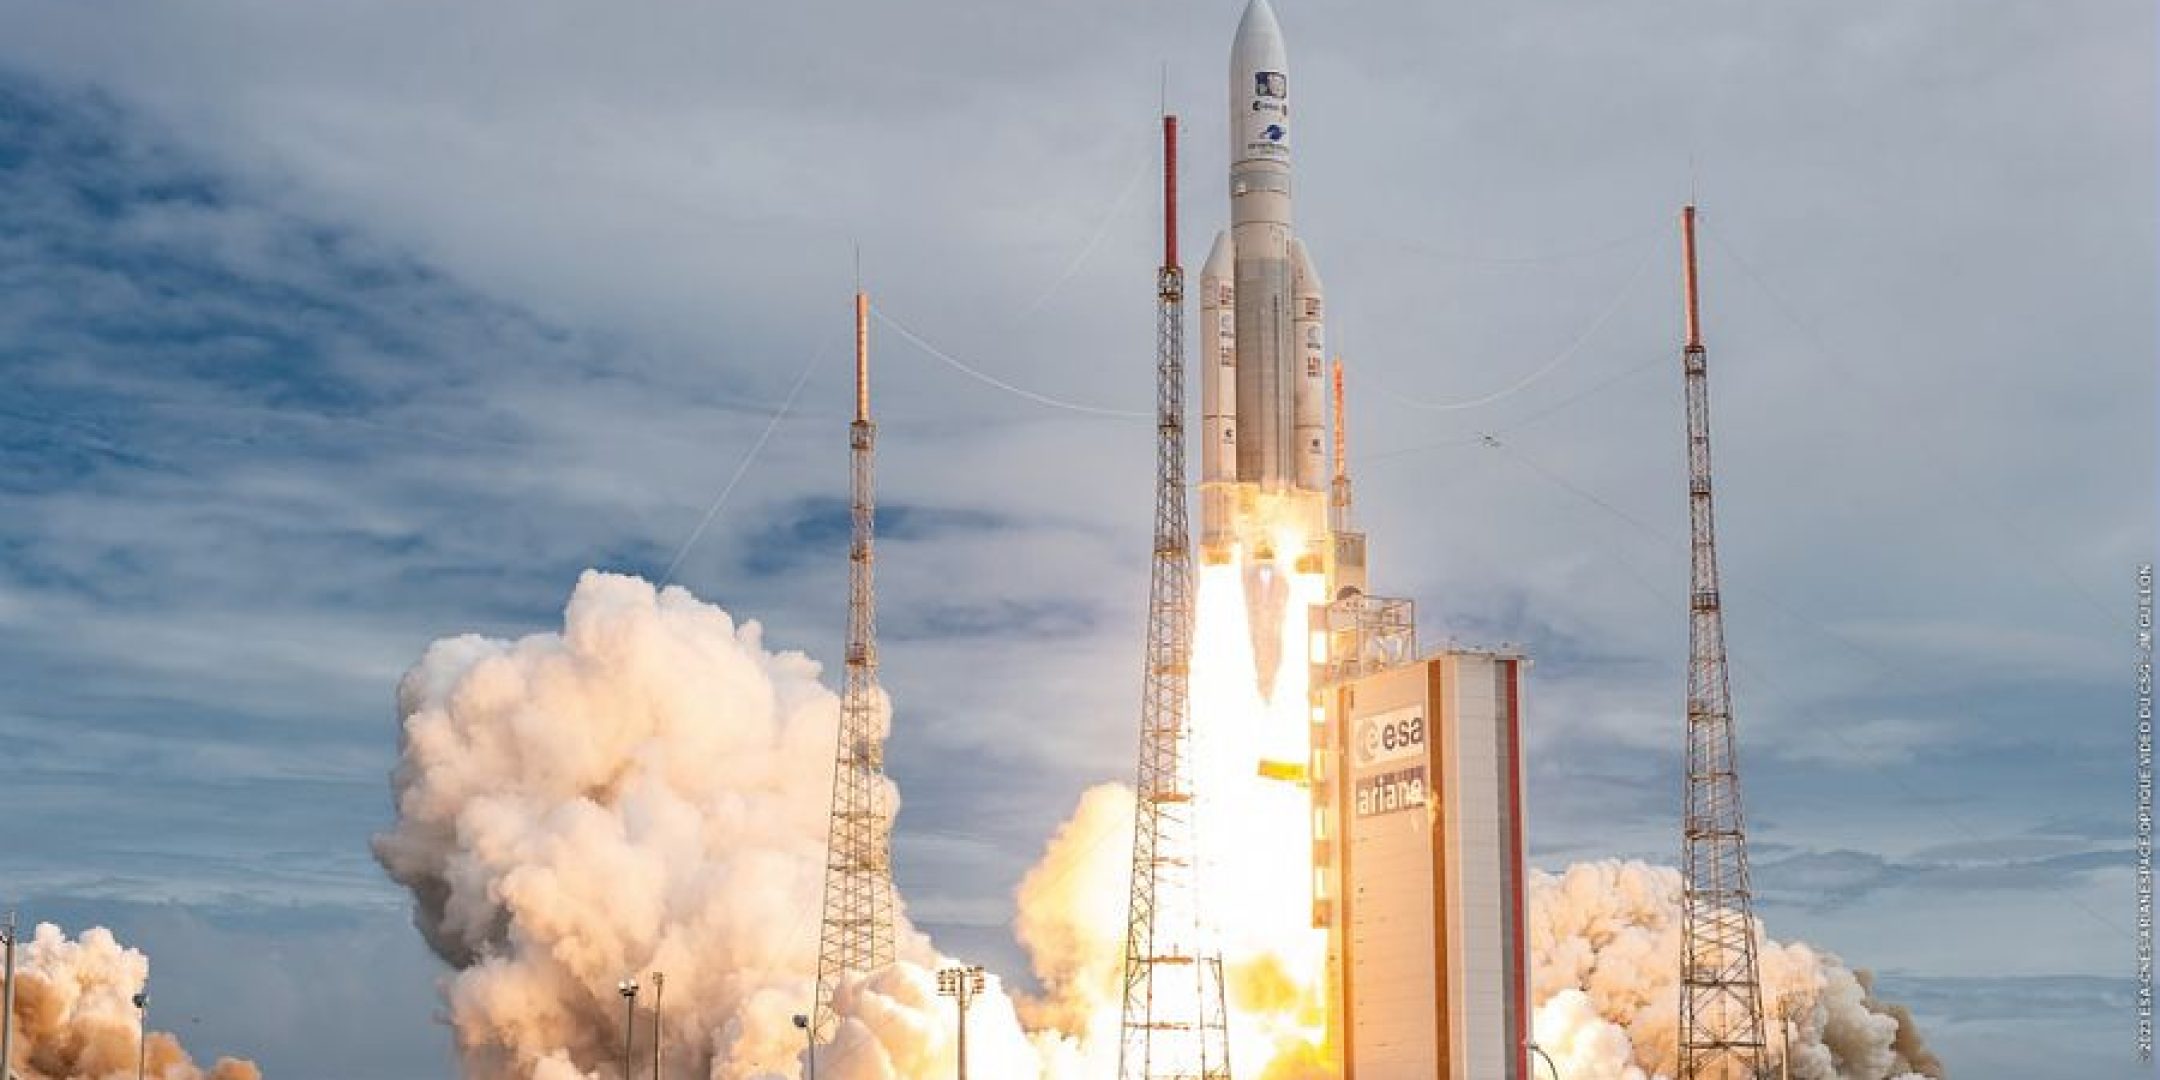 Decollage du lanceur Ariane 5 VA260 le 14 avril 2023 depuis le Centre spatial guyanais.

Le lanceur a place en orbite la sonde spatiale JUICE, (JUpiter ICy moons Explorer) qui rejoindra lorbite de Jupiter a l'issue d'un voyage de plus de sept annees. Ce lancement est le 1er de 2023 depuis le Centre spatial guyanais et la premiere mission de lannee pour Ariane 5.